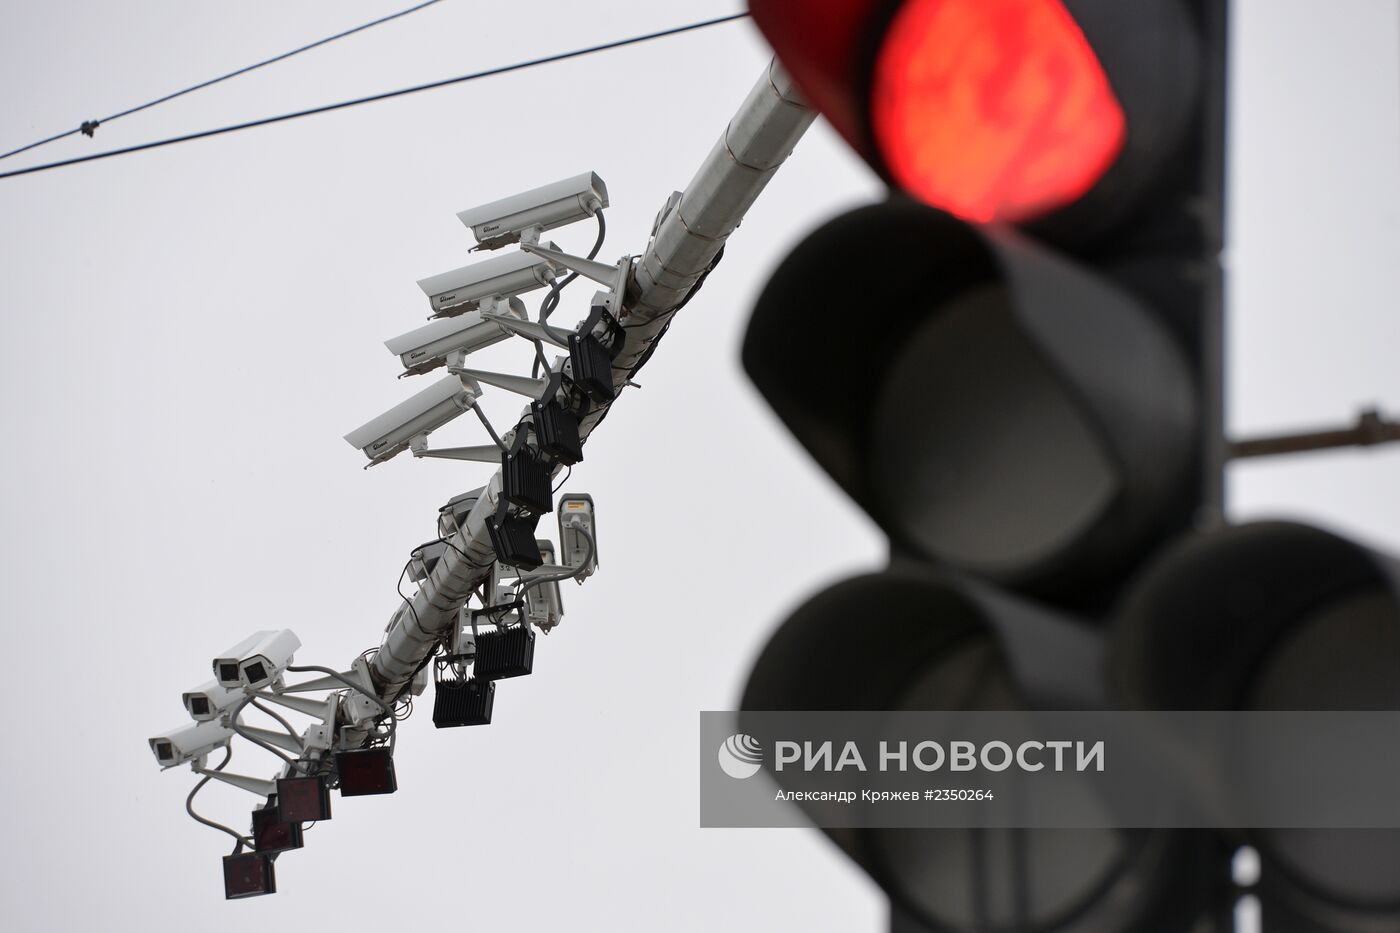 Комплекс автофиксации нарушений ПДД в Новосибирске